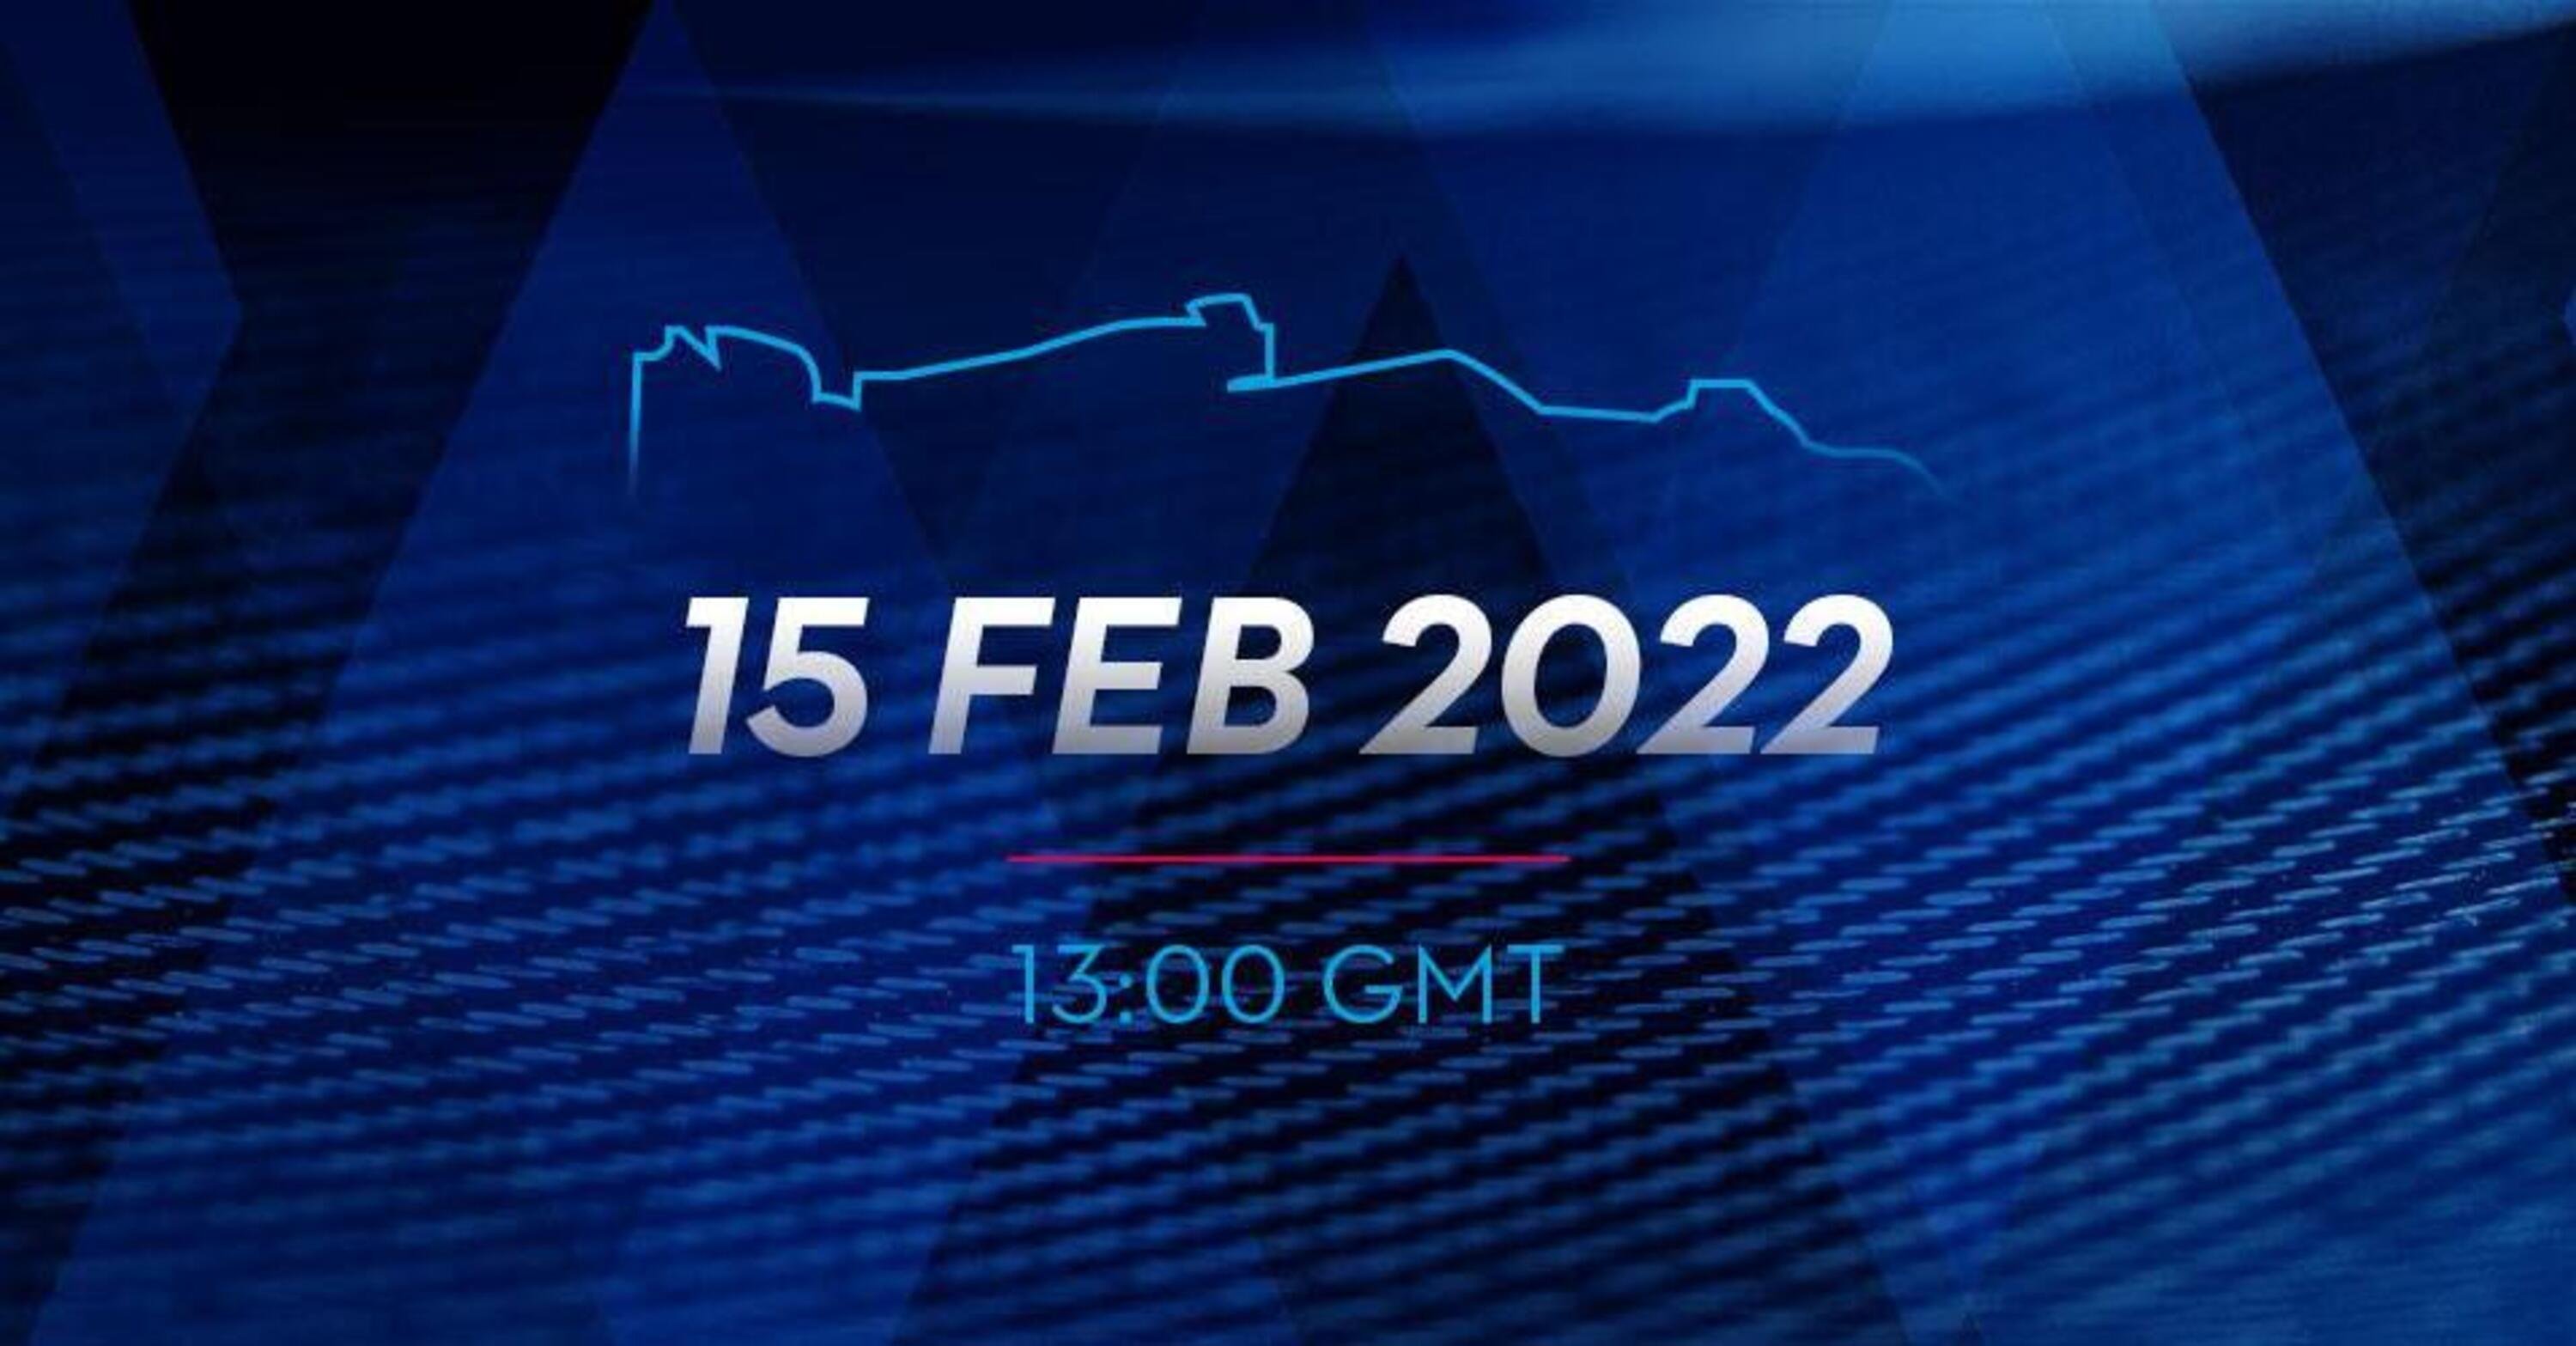 Formula 1, Williams: la monoposto 2022 sar&agrave; presentata il 15 febbraio